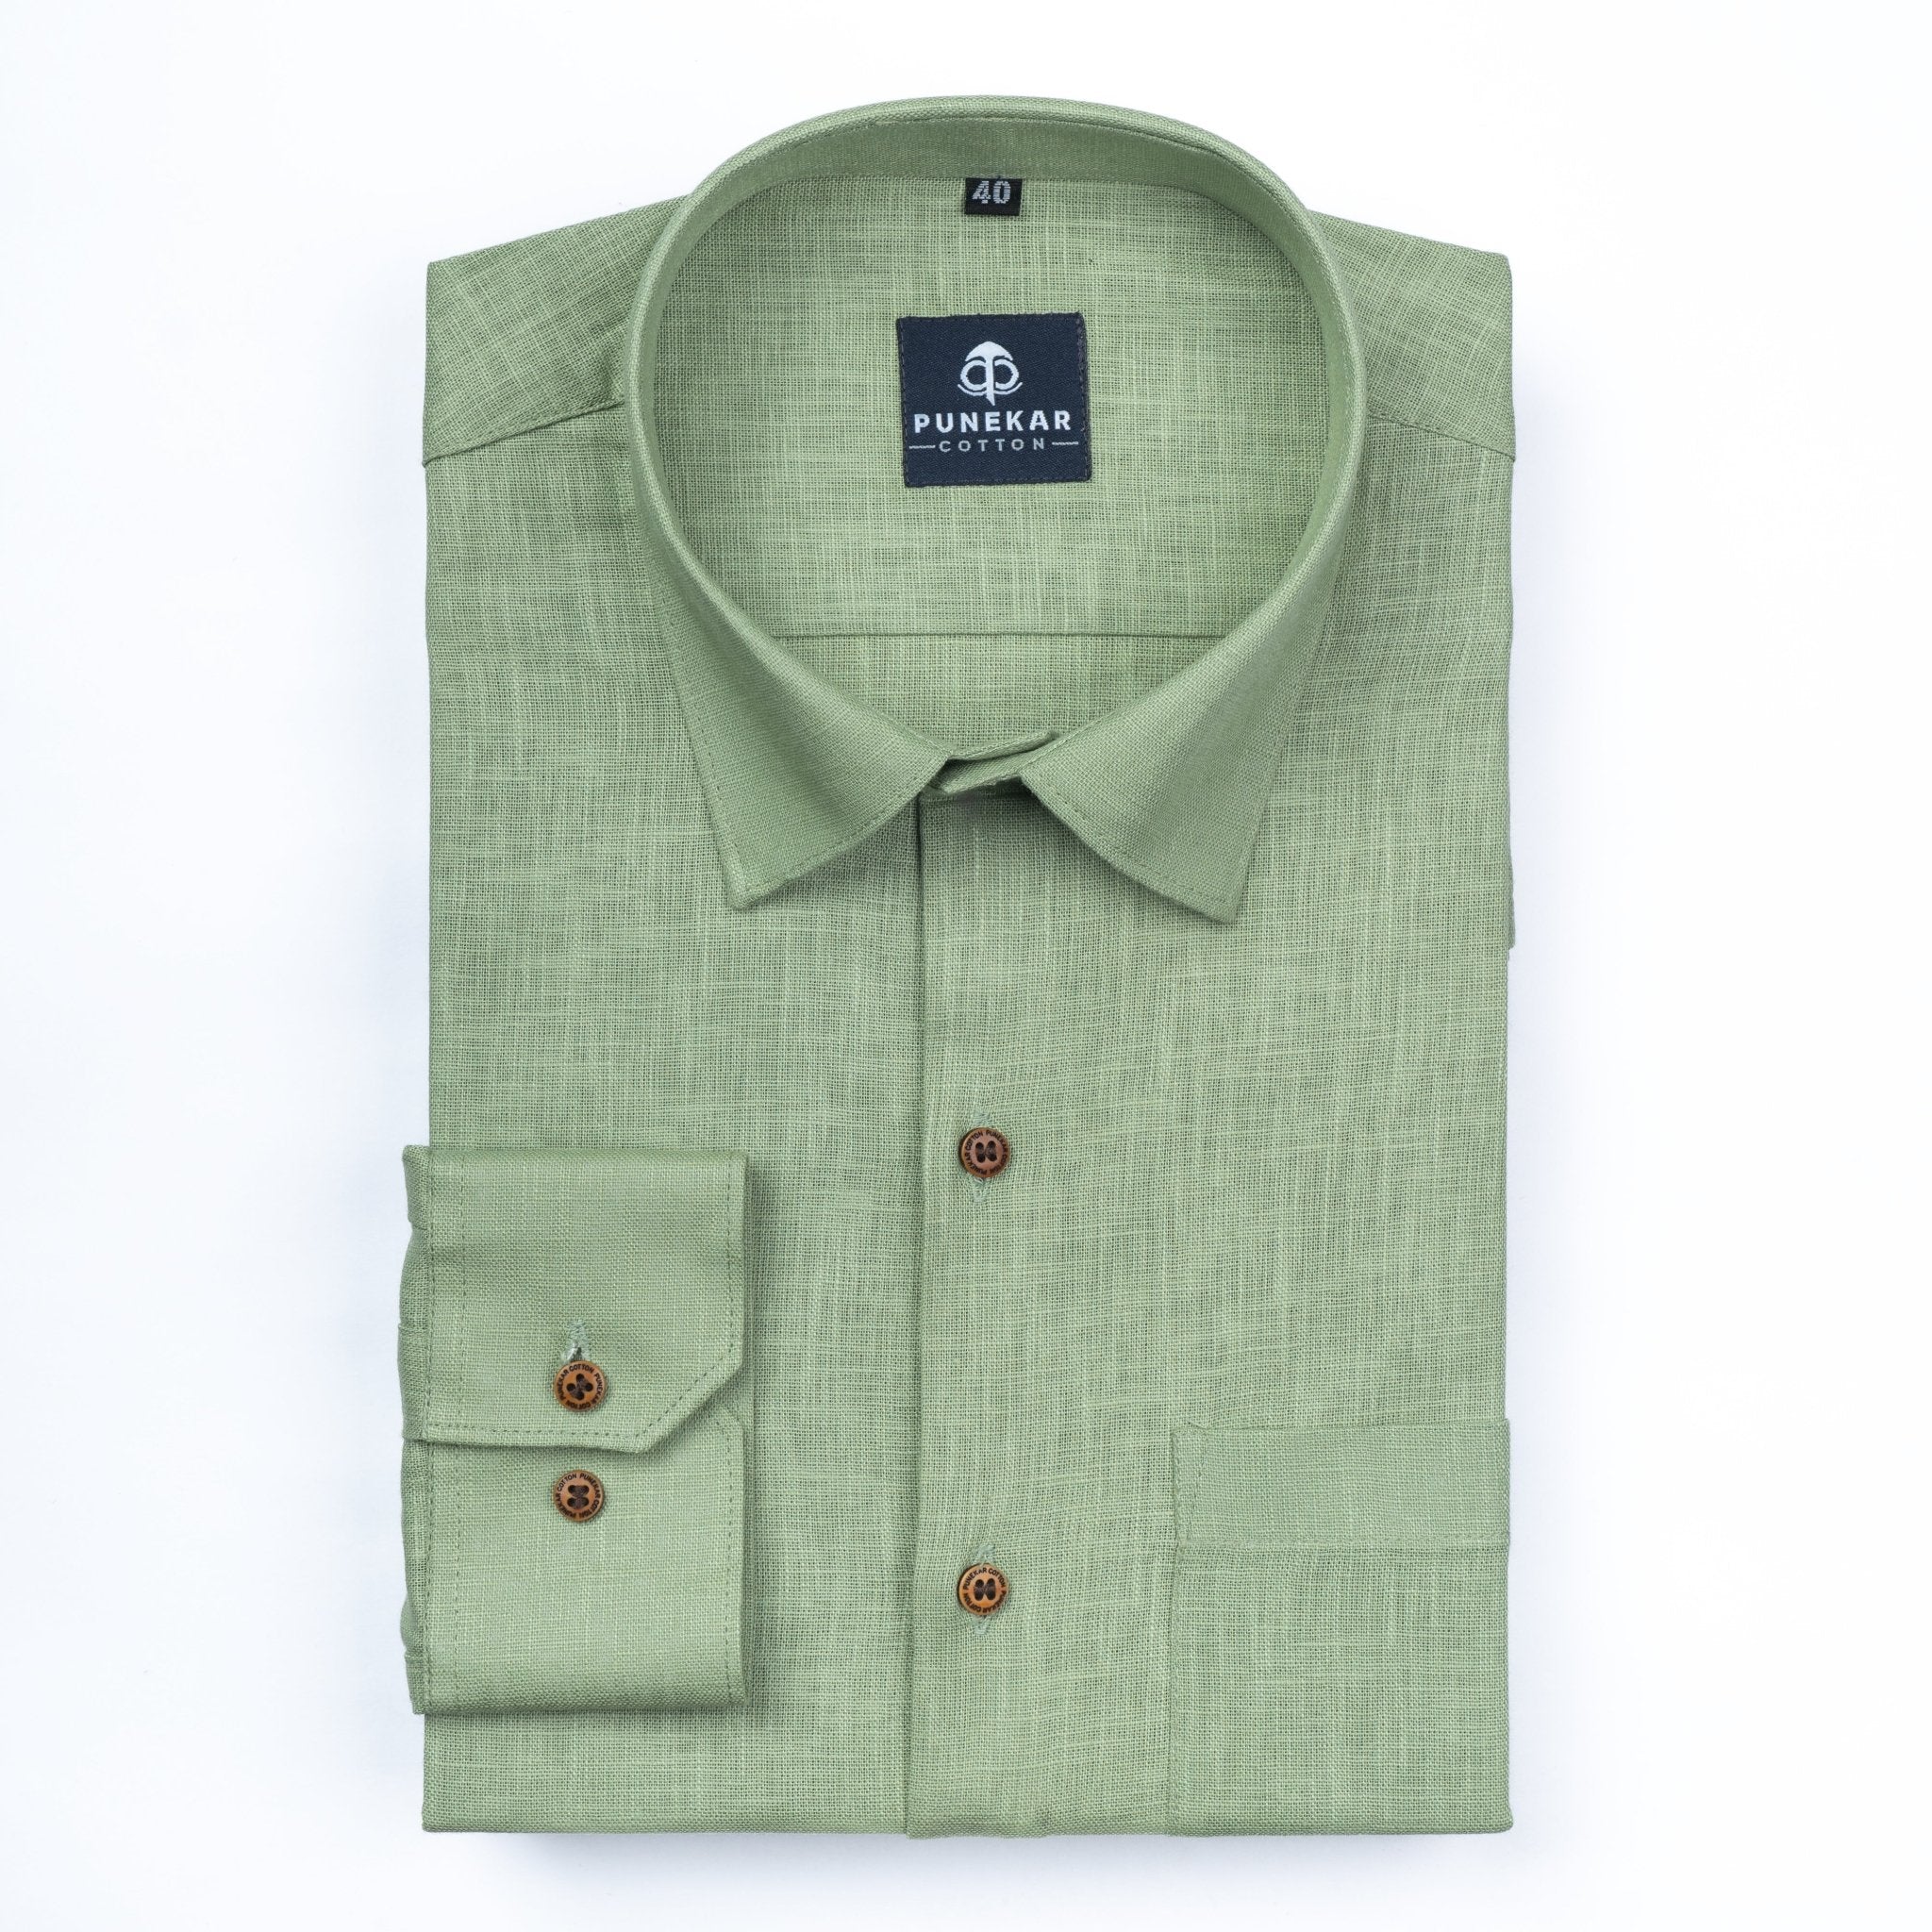 Olive Green Color Linen Formal Shirts For Men - Punekar Cotton